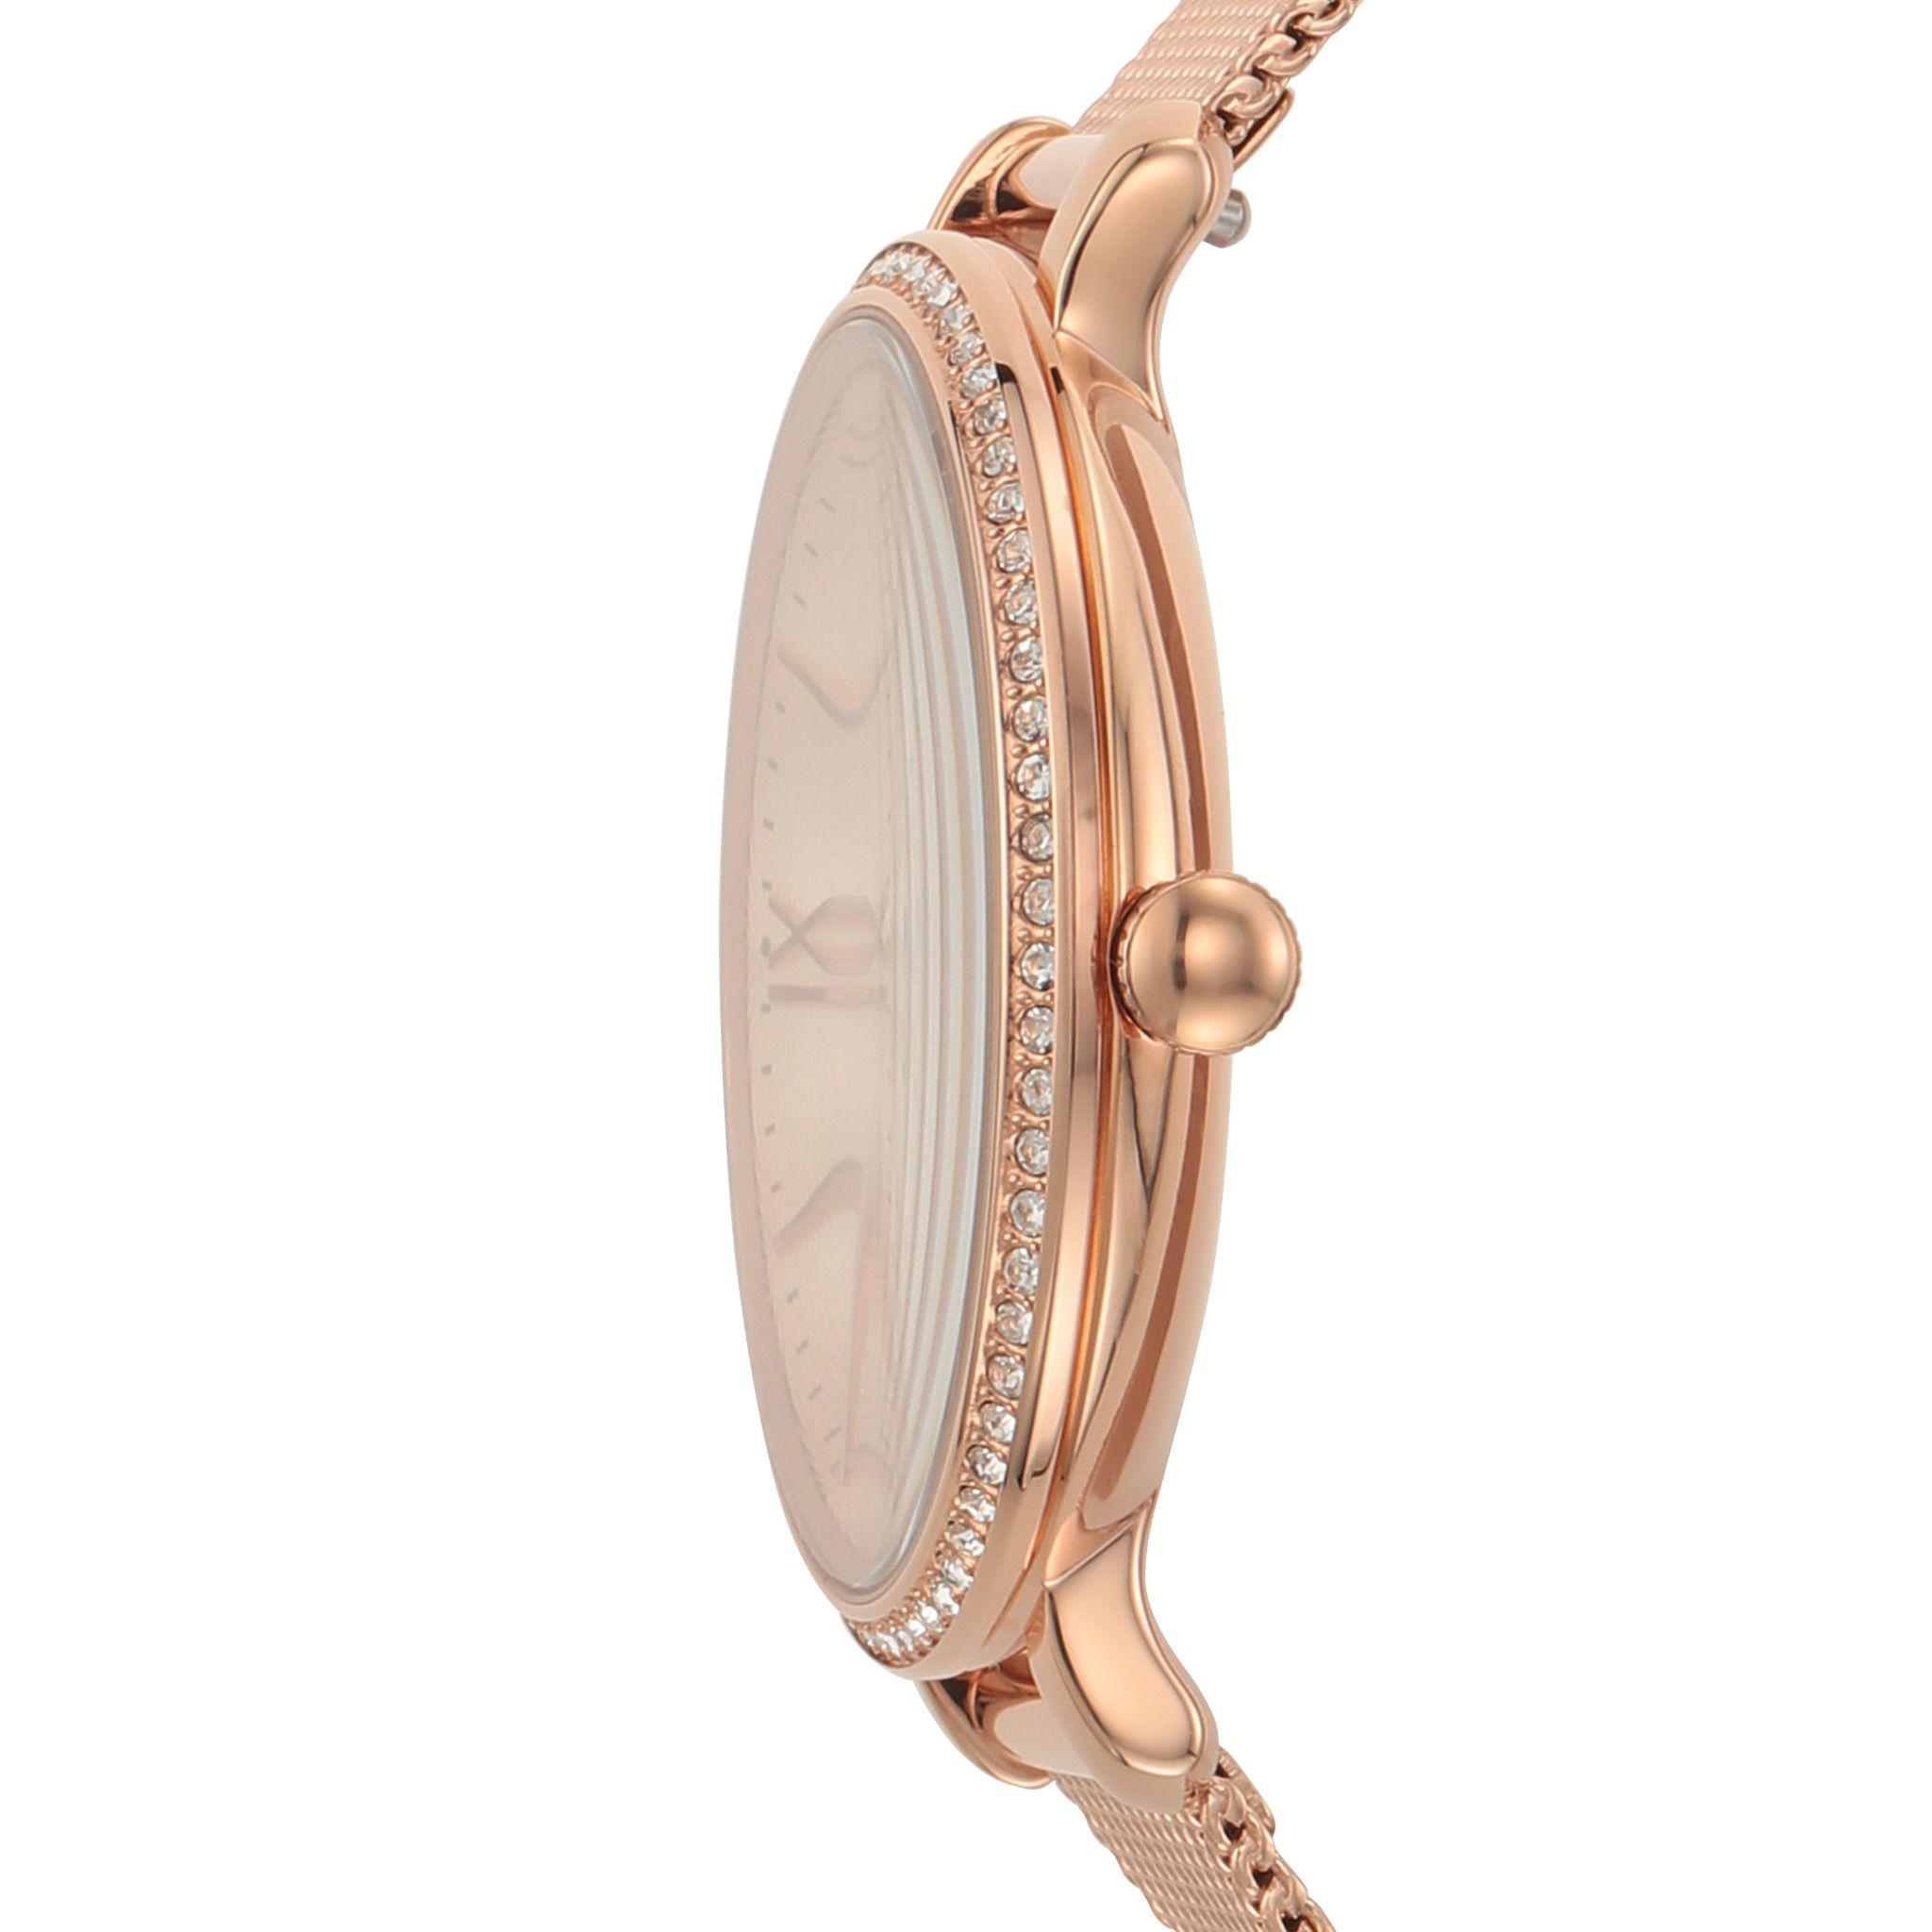  Đồng hồ Kim nữ Fossil JACQUELINE dây kim loại ES4628 - màu vàng hồng 